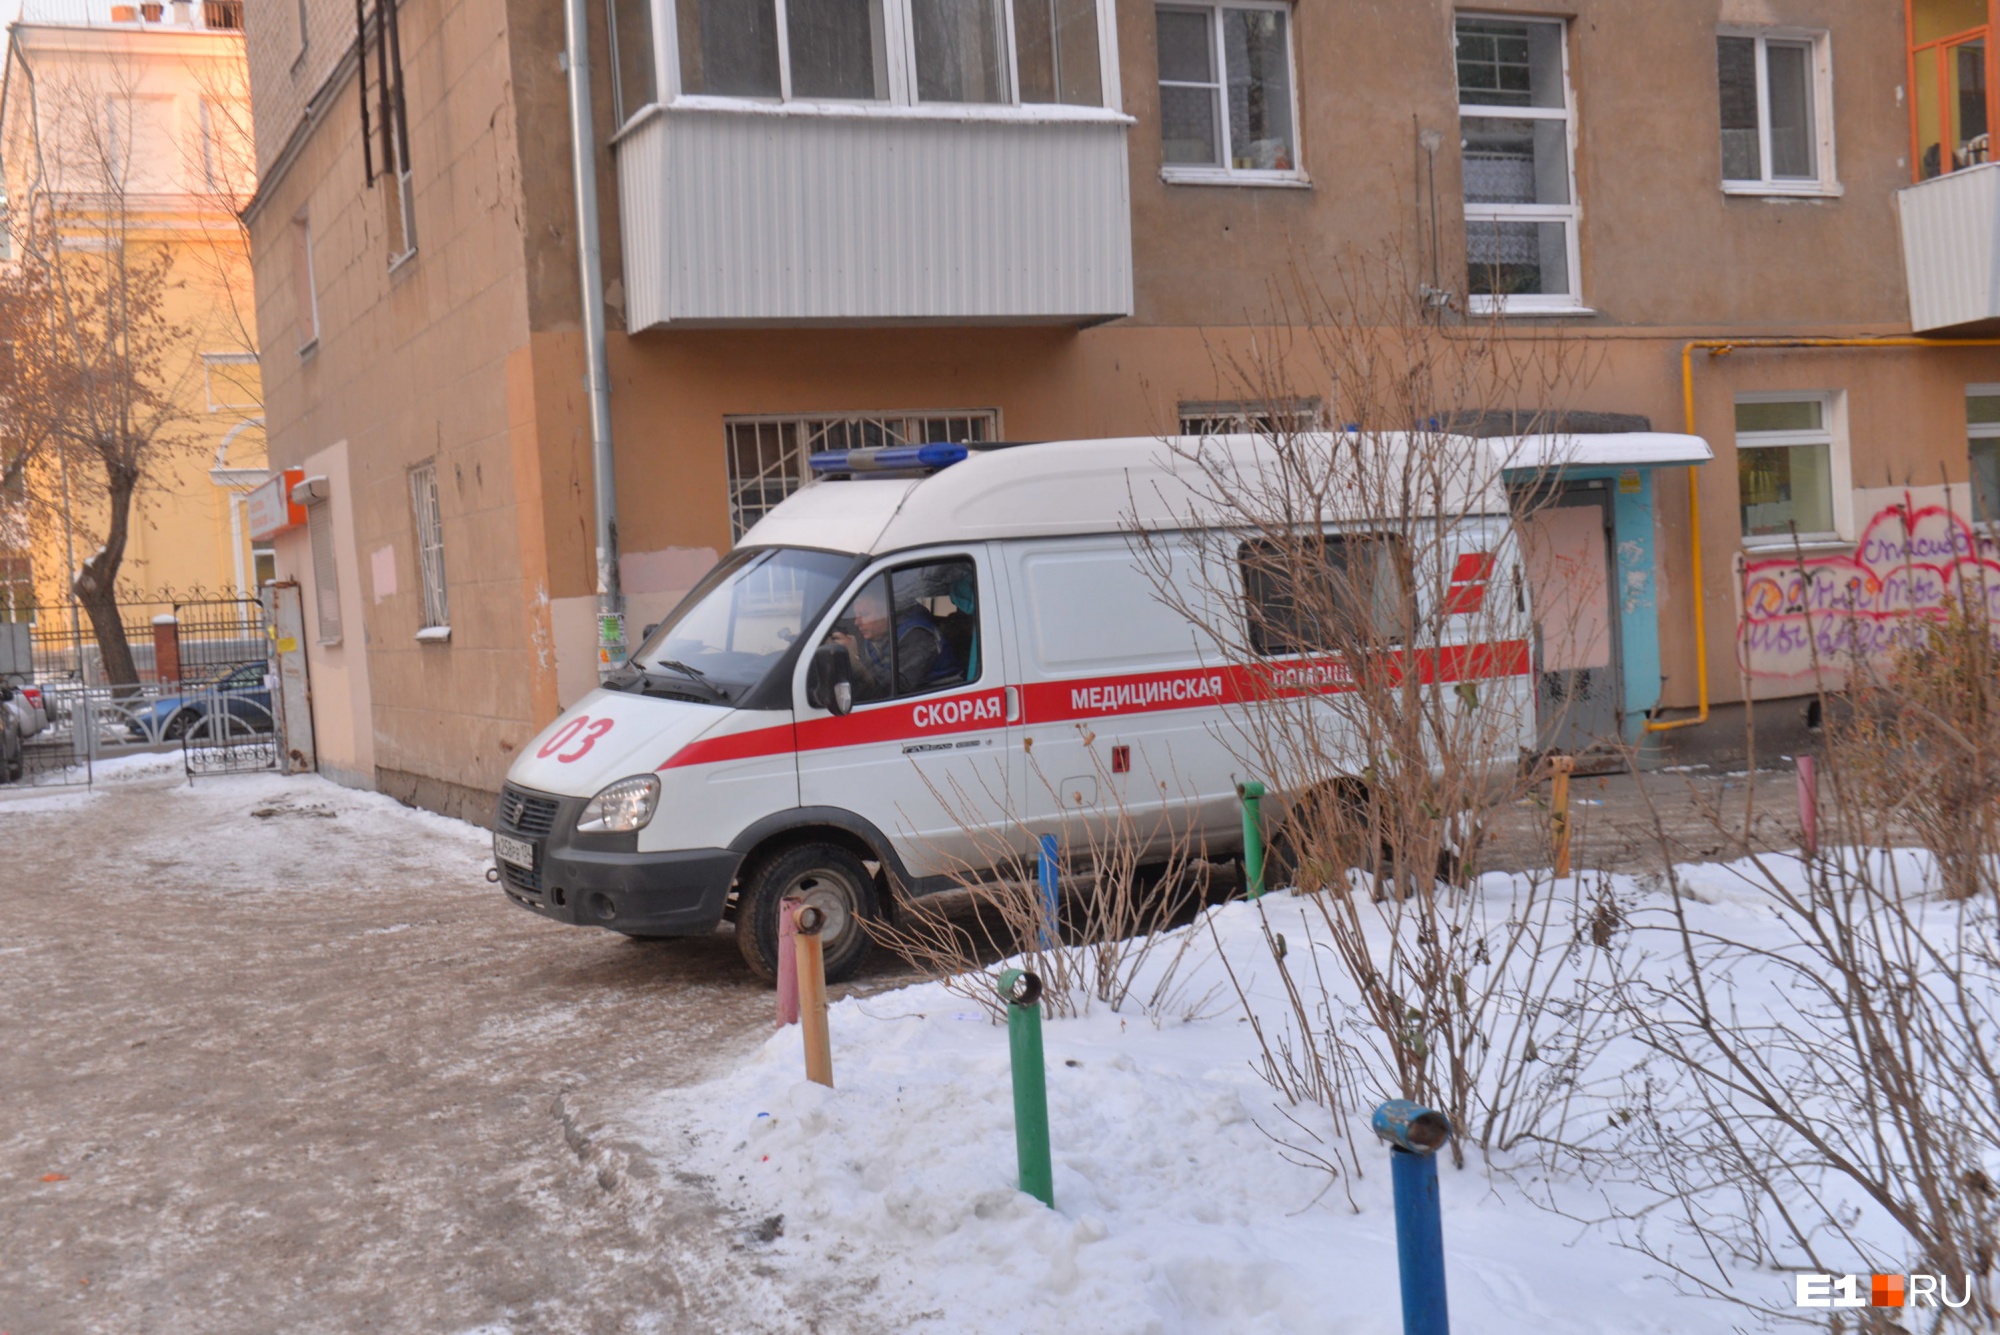 Пандемия отступает? В Екатеринбурге в четыре раза сократилось число «ковидных» вызовов скорой помощи